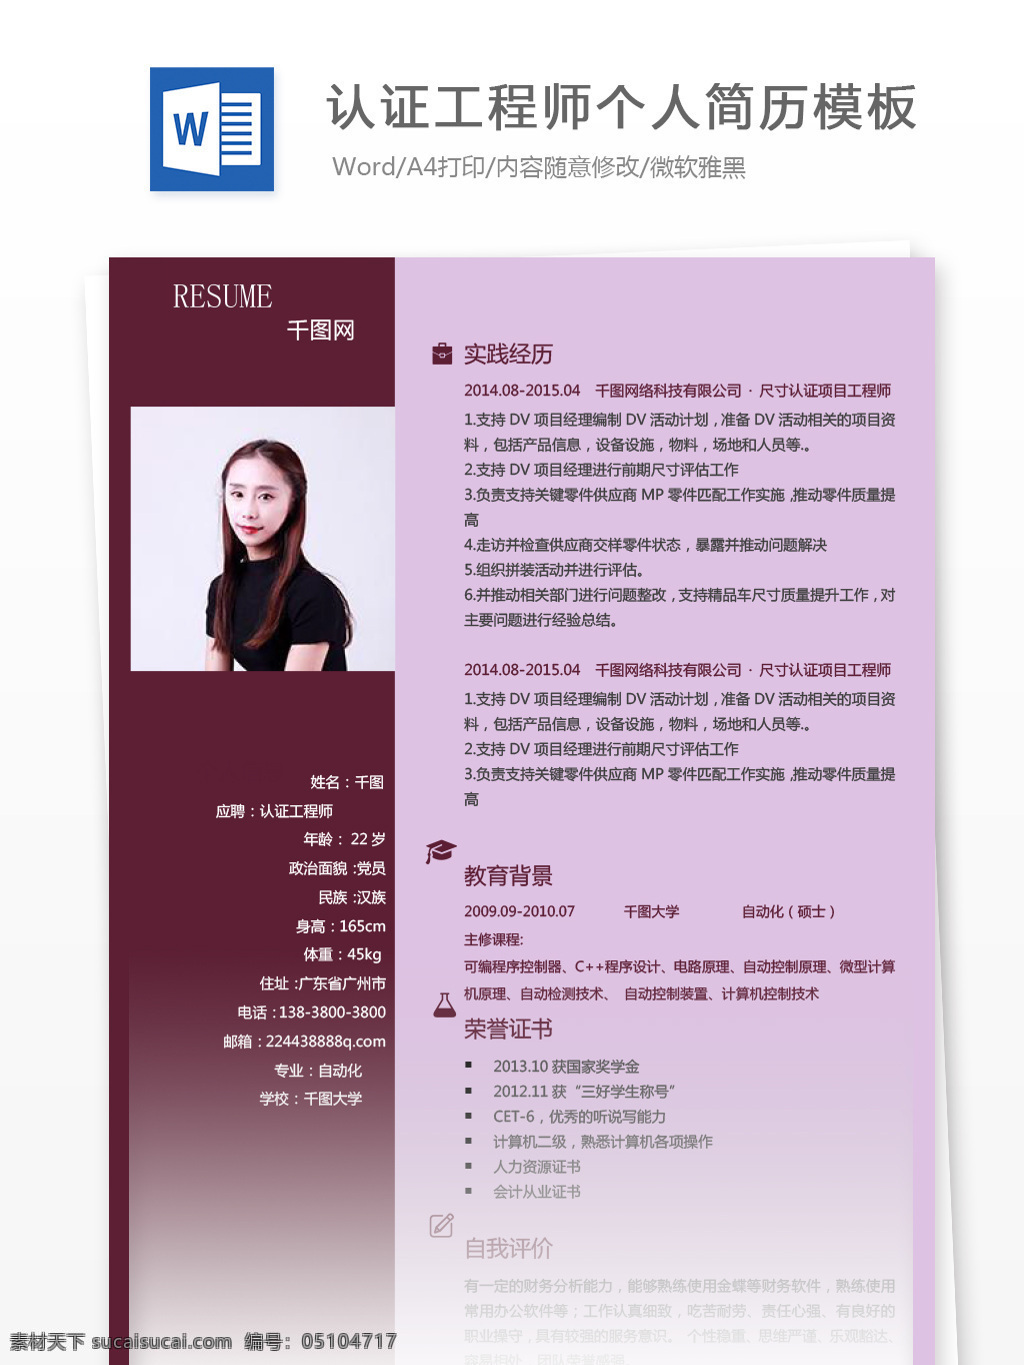 朱 芮 瑶 认证 工程师 个人简历 模板 简历 简历模板 紫色 简约 个人简历模板 13年 认证工程师 生产 拼色